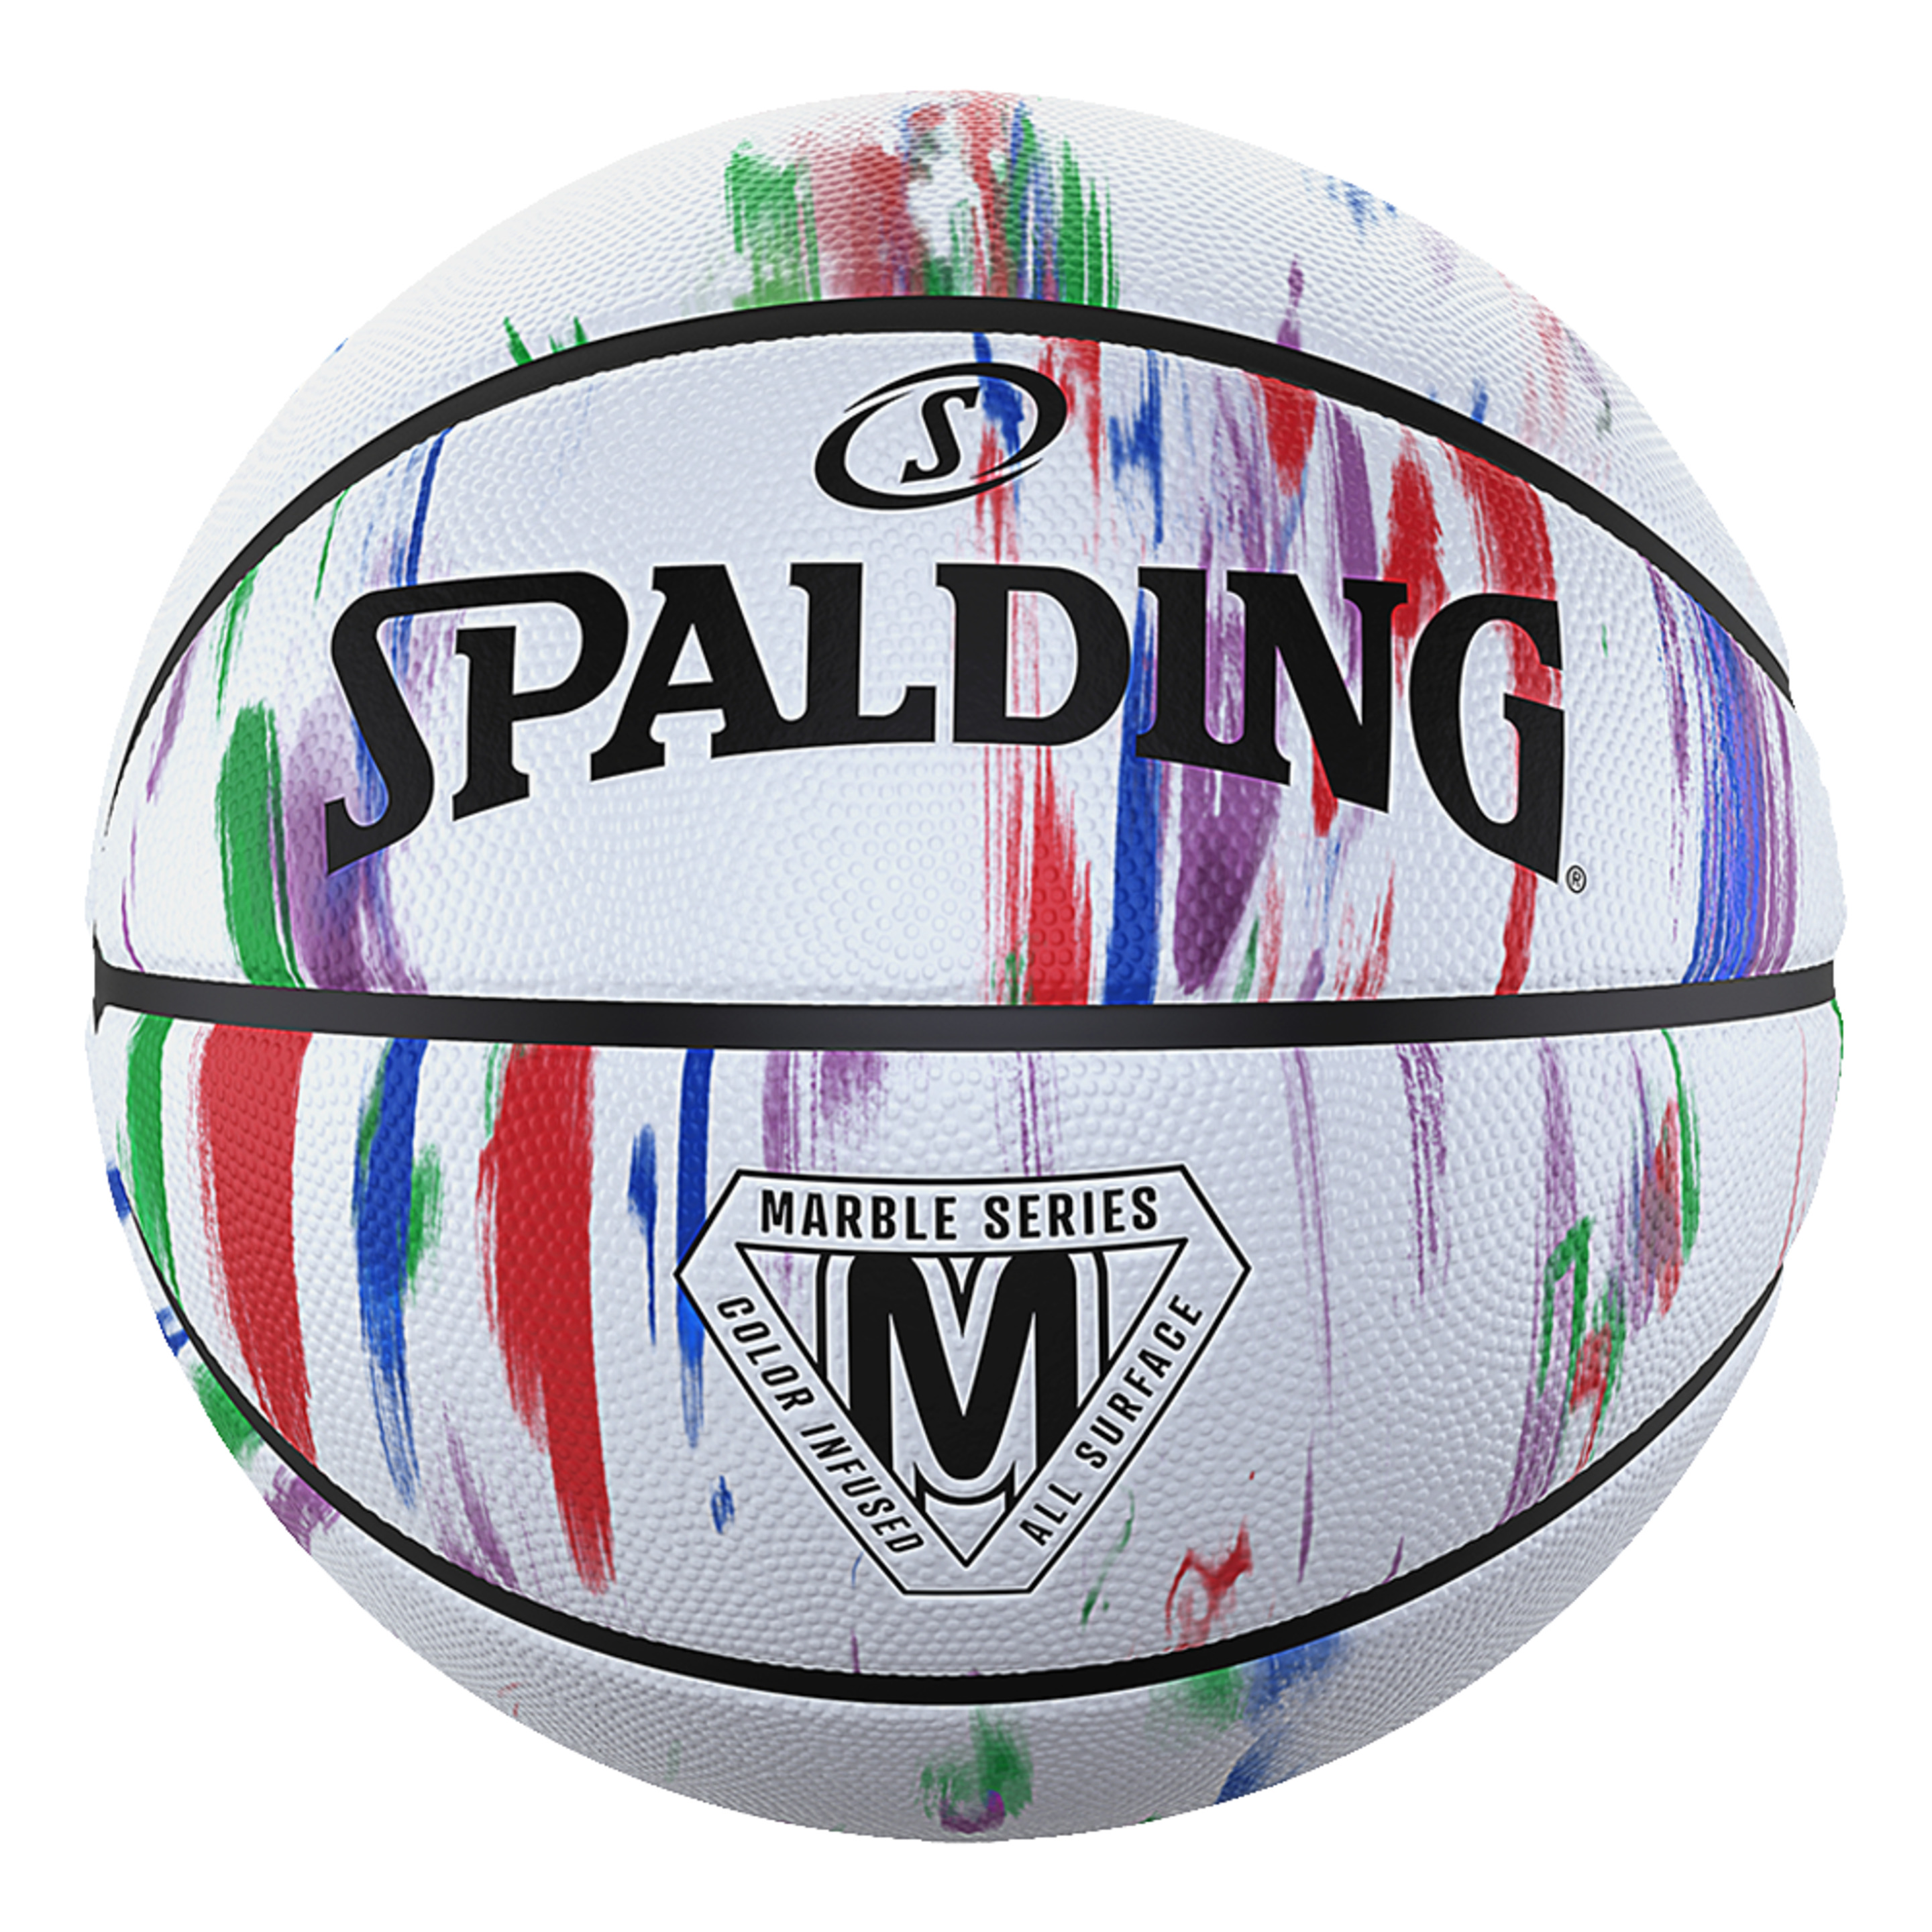 Balón De Baloncesto Spalding Marble Series Rainbow Sz5 - multicolor - 